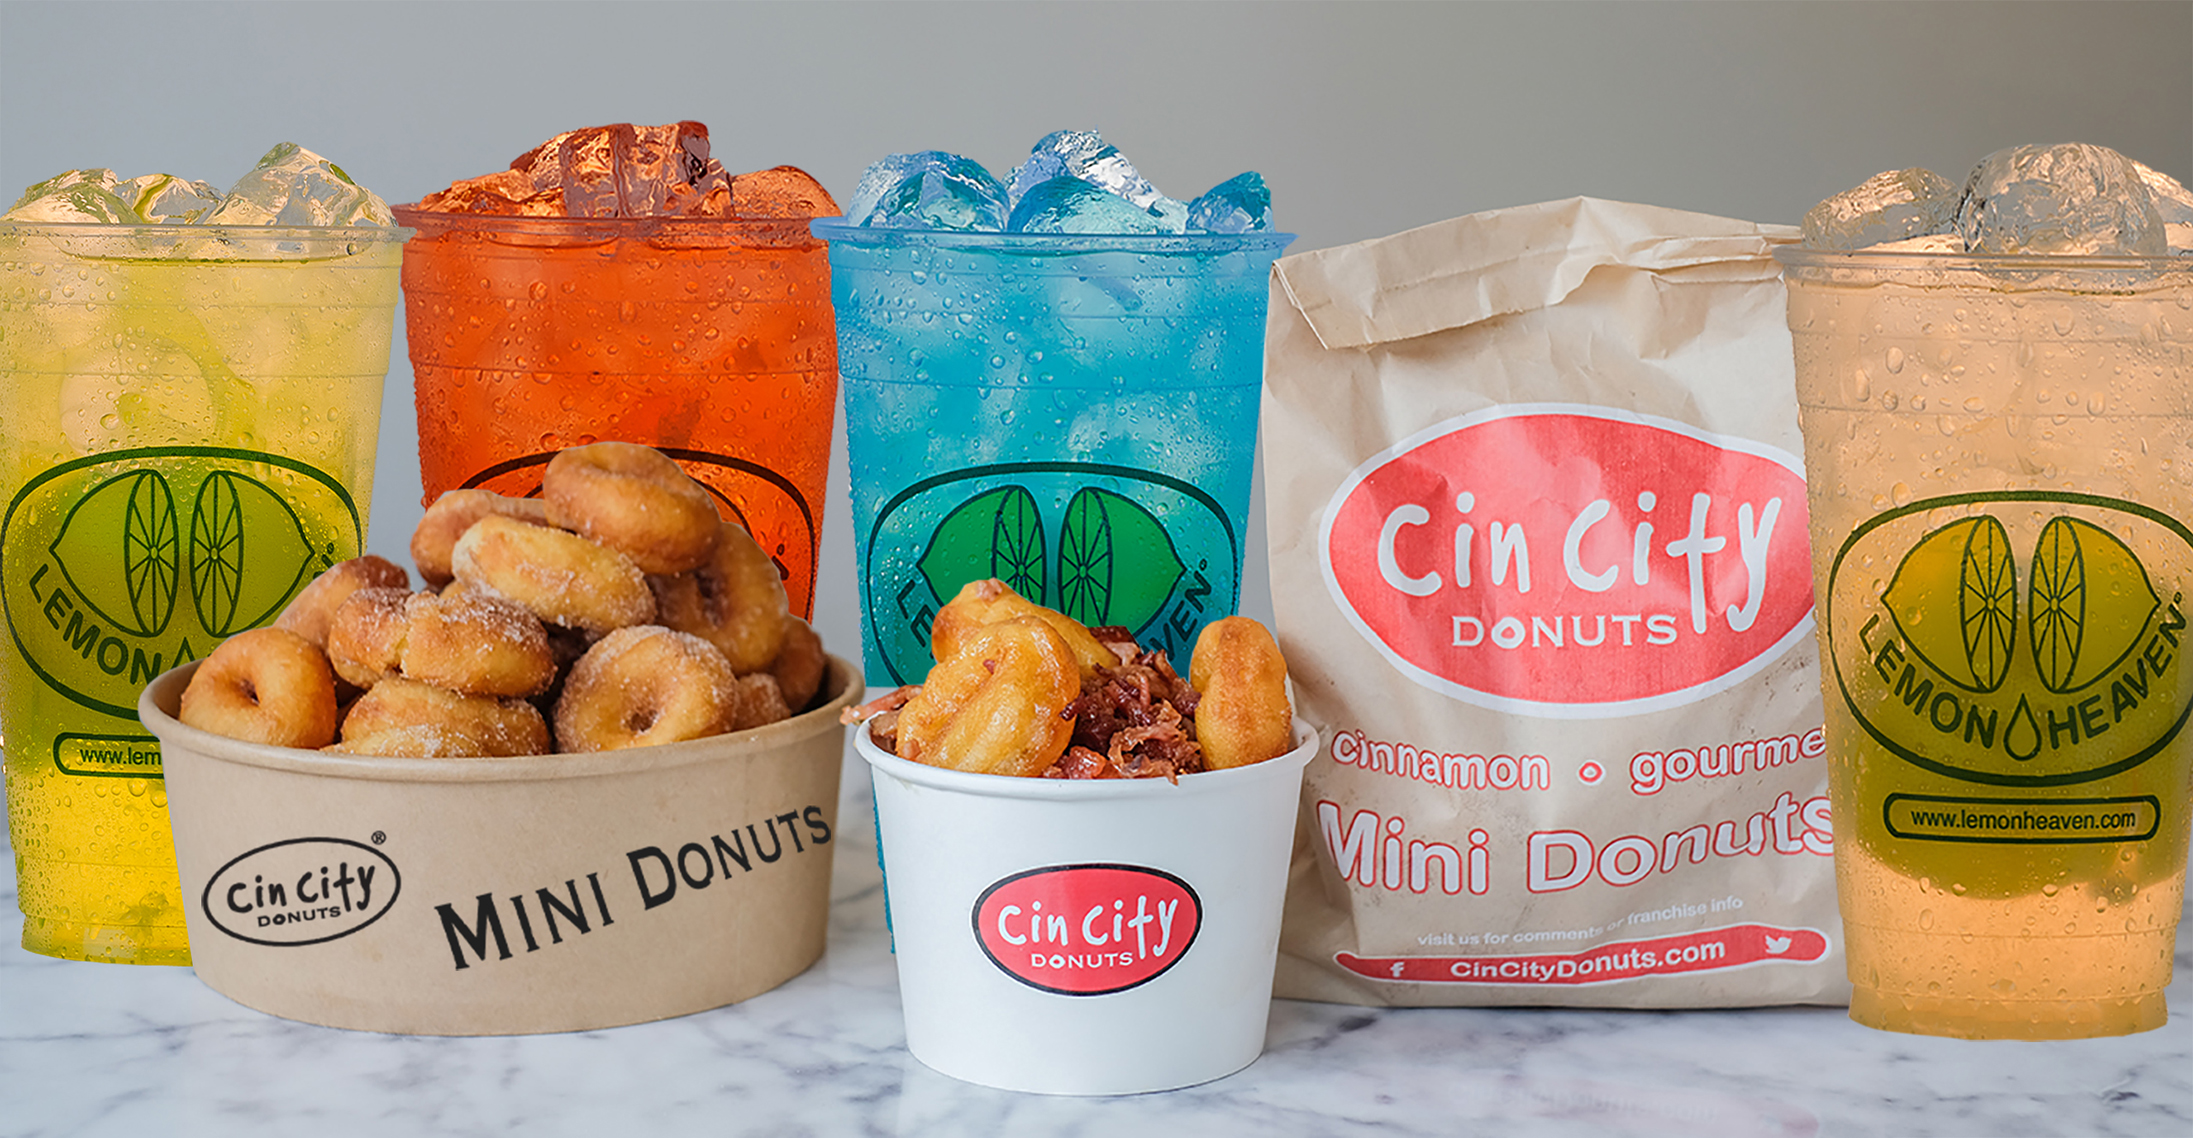 Cin City Donuts and Lemon Heaven Lemonade